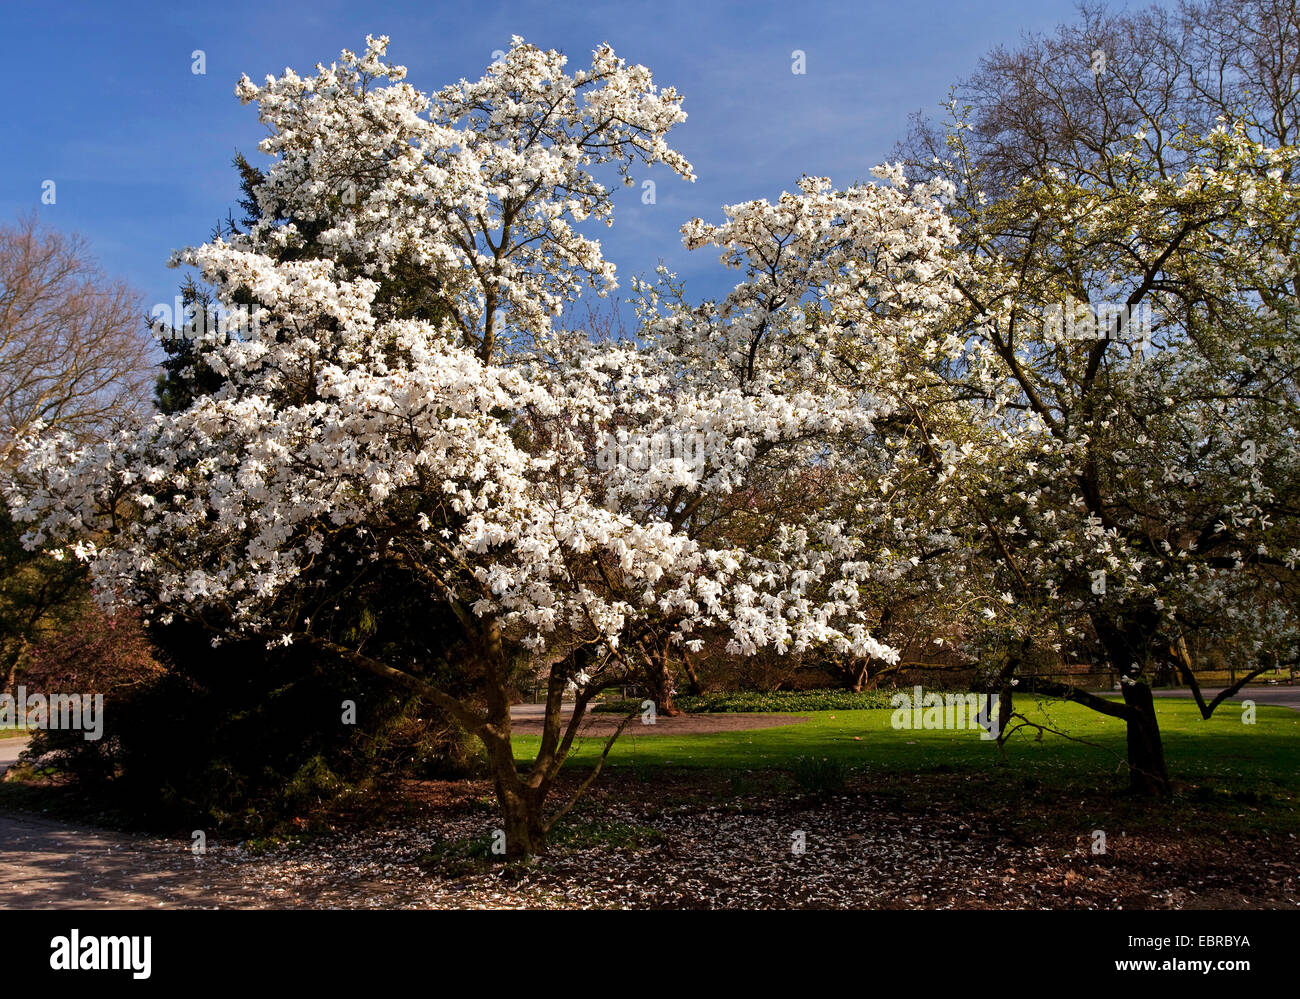 Stern-Magnolie (Magnolia Stellata), blühenden Baum im Botanischen Garten Rombergpark, Deutschland, Nordrhein-Westfalen, Ruhrgebiet, Dortmund Stockfoto